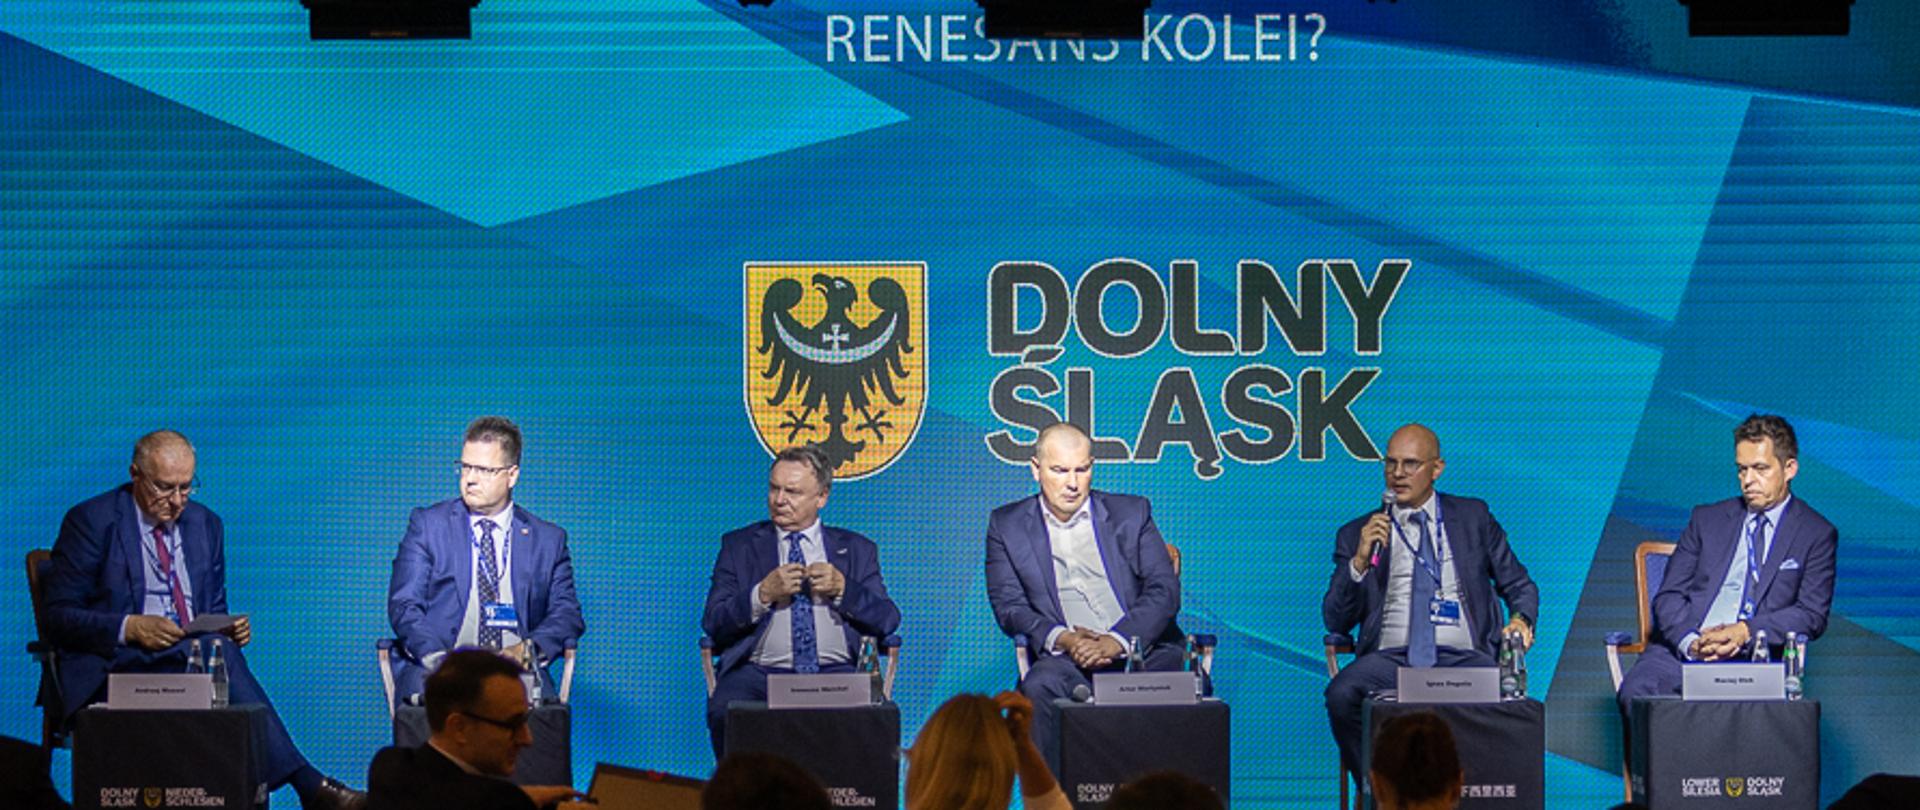 Wiceminister infrastruktury Andrzej Bittel w trakcie panelu "Renesans kolei?" , XXXI Forum Ekonomiczne w Karpaczu